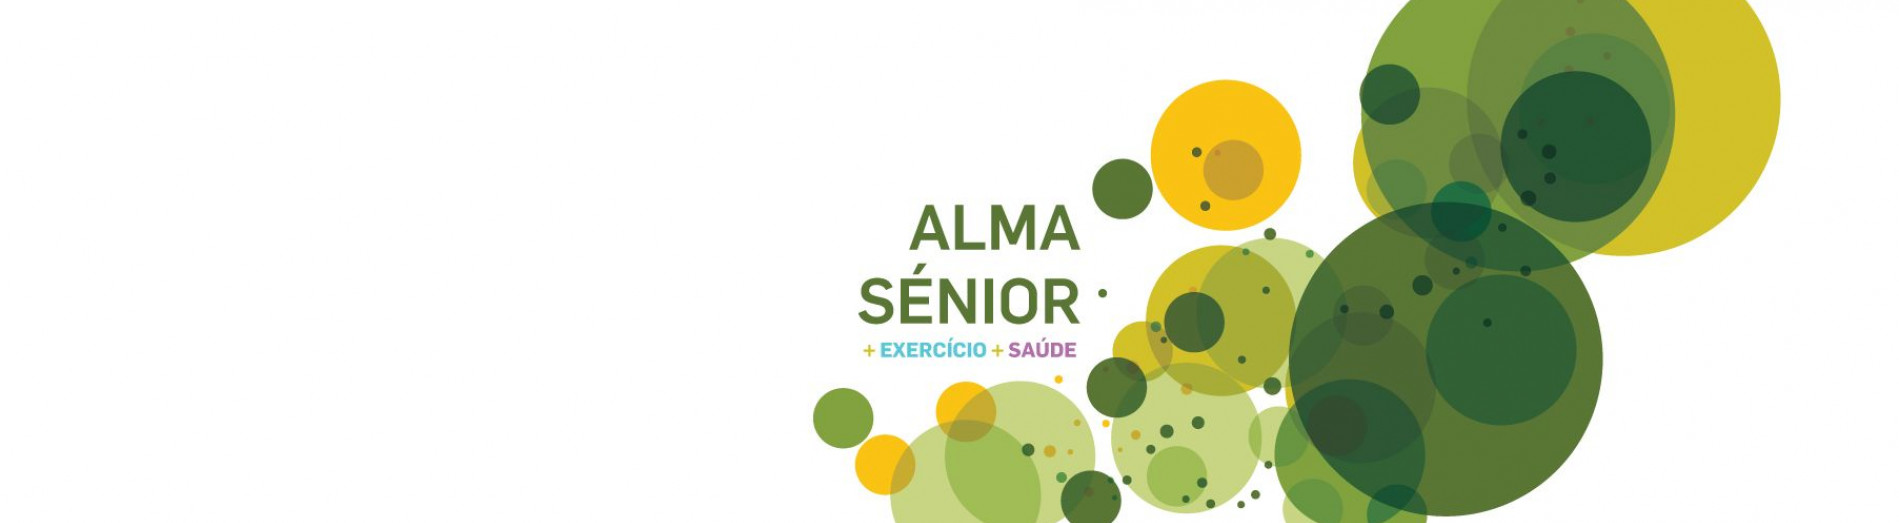 alma senior